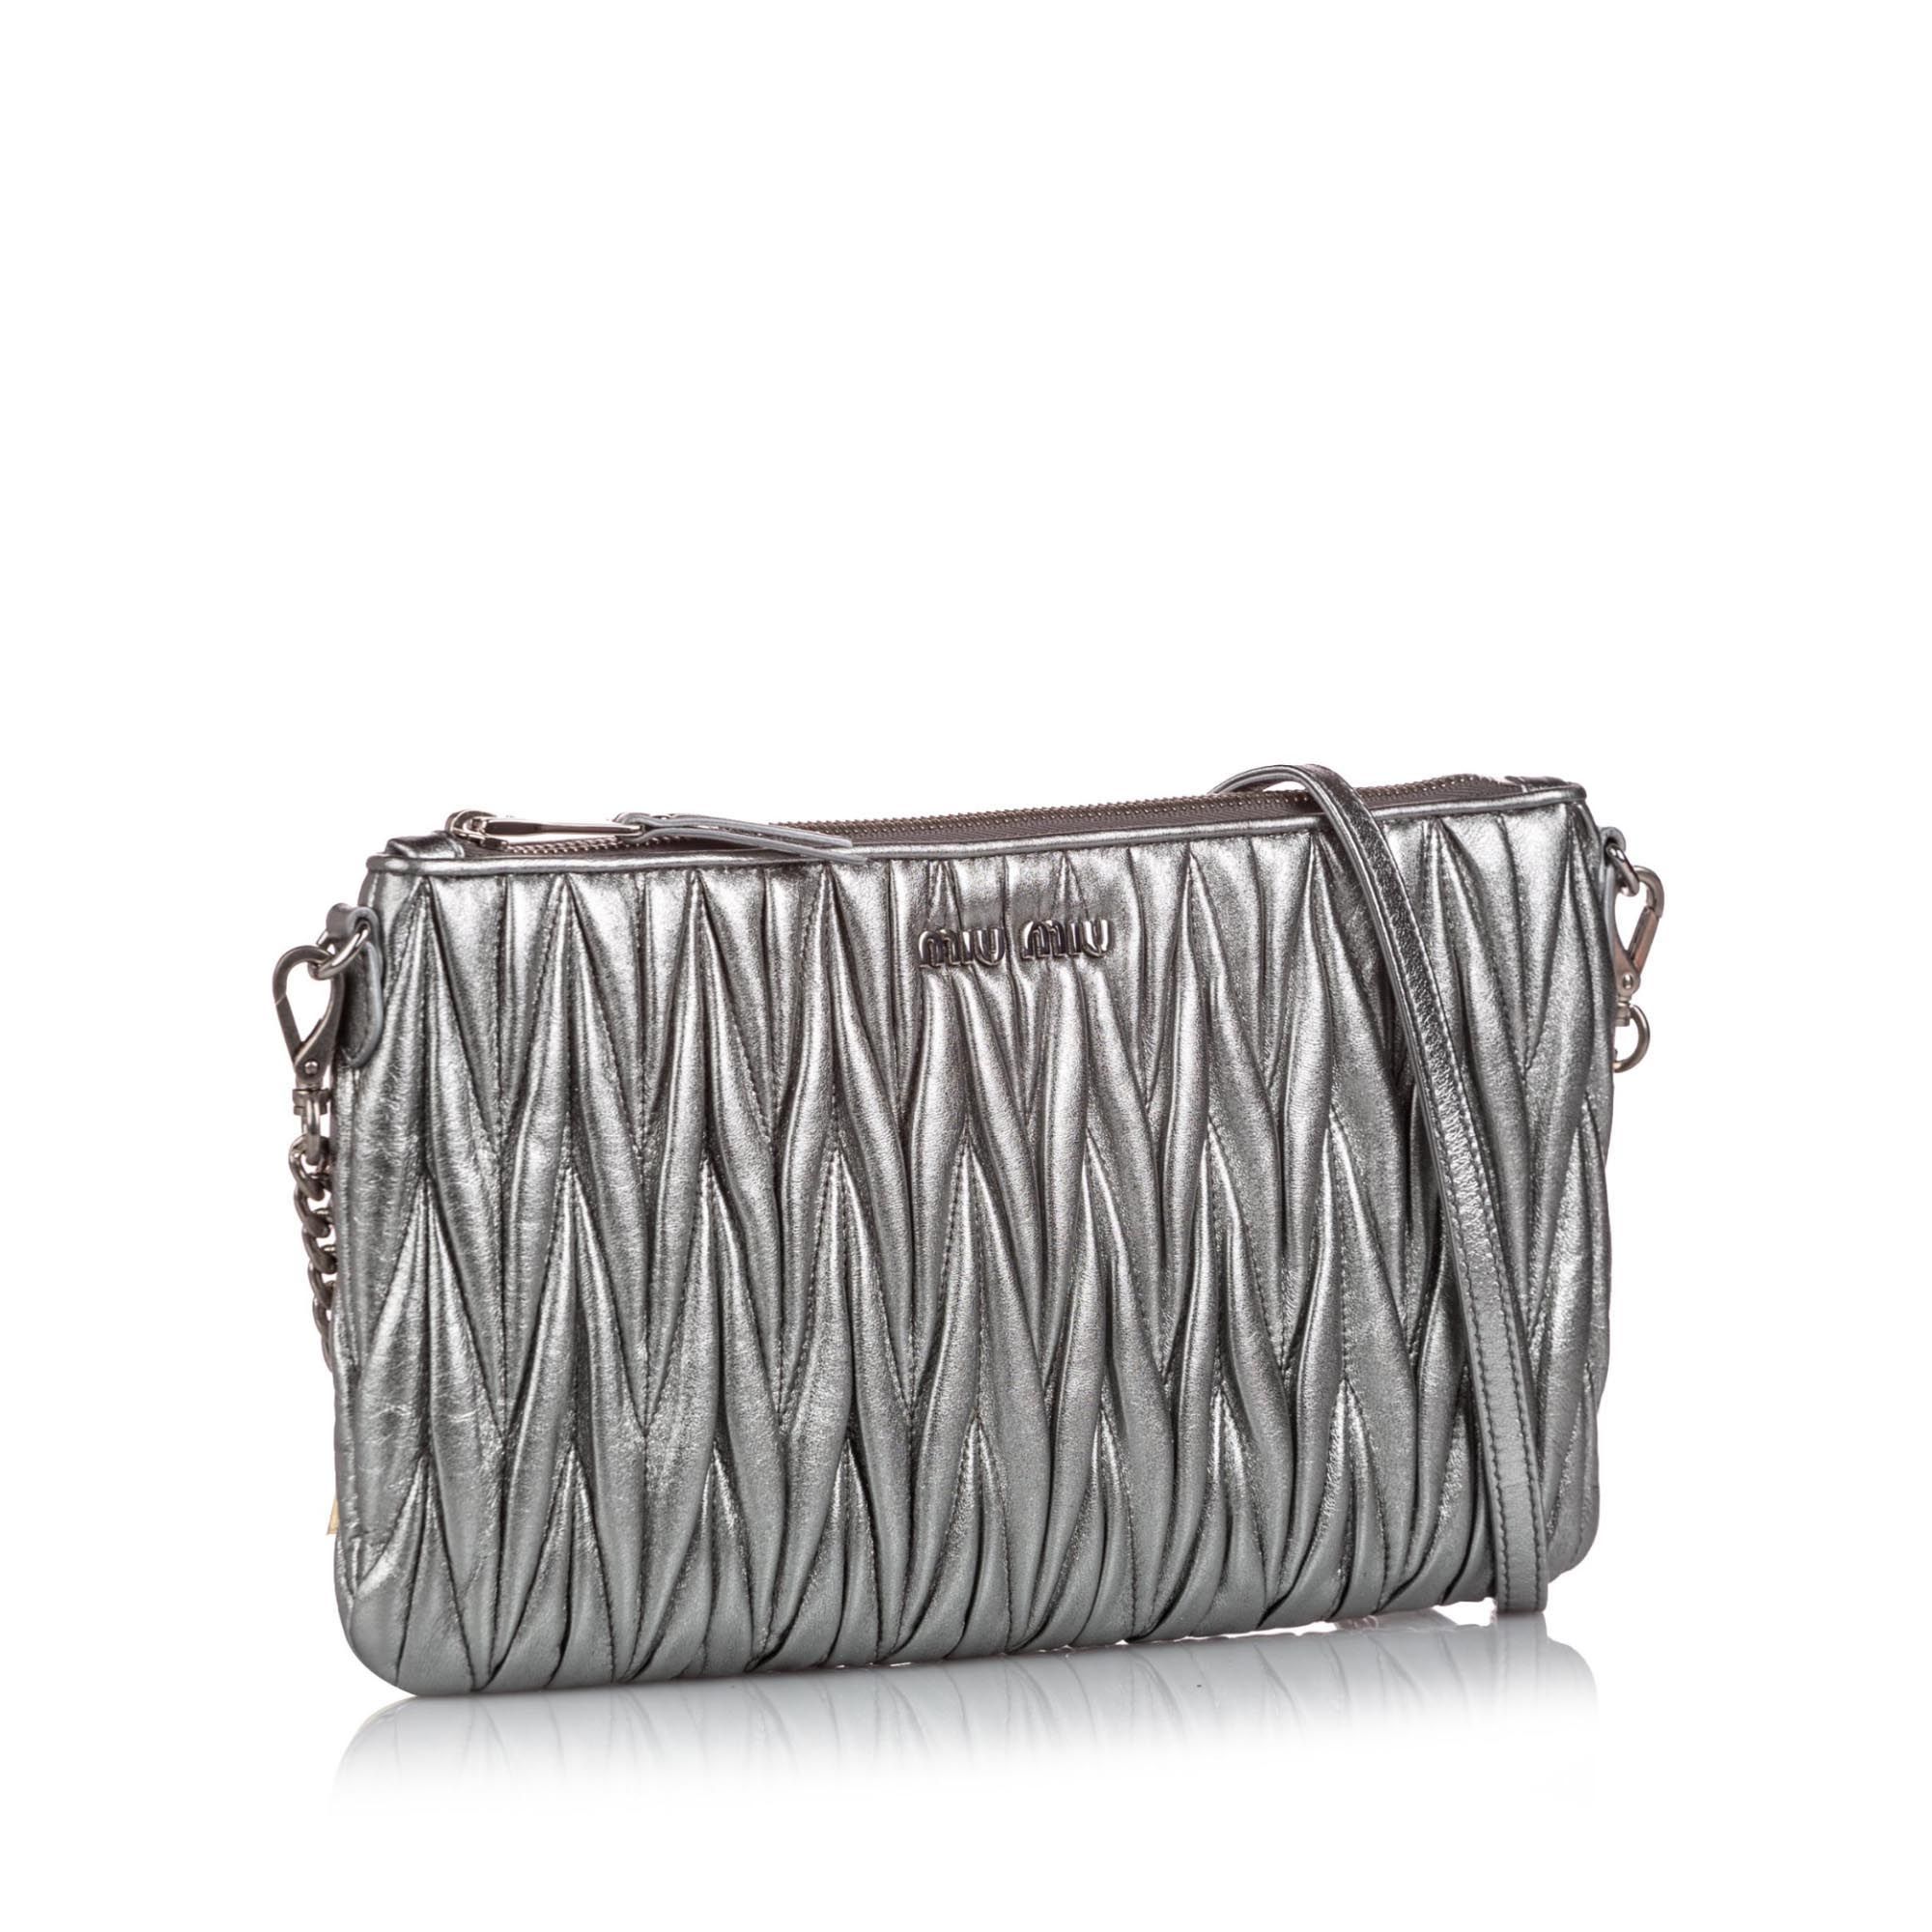 Chanel Silver Matelasse Metallic Leather Vintage Shoulder Bag